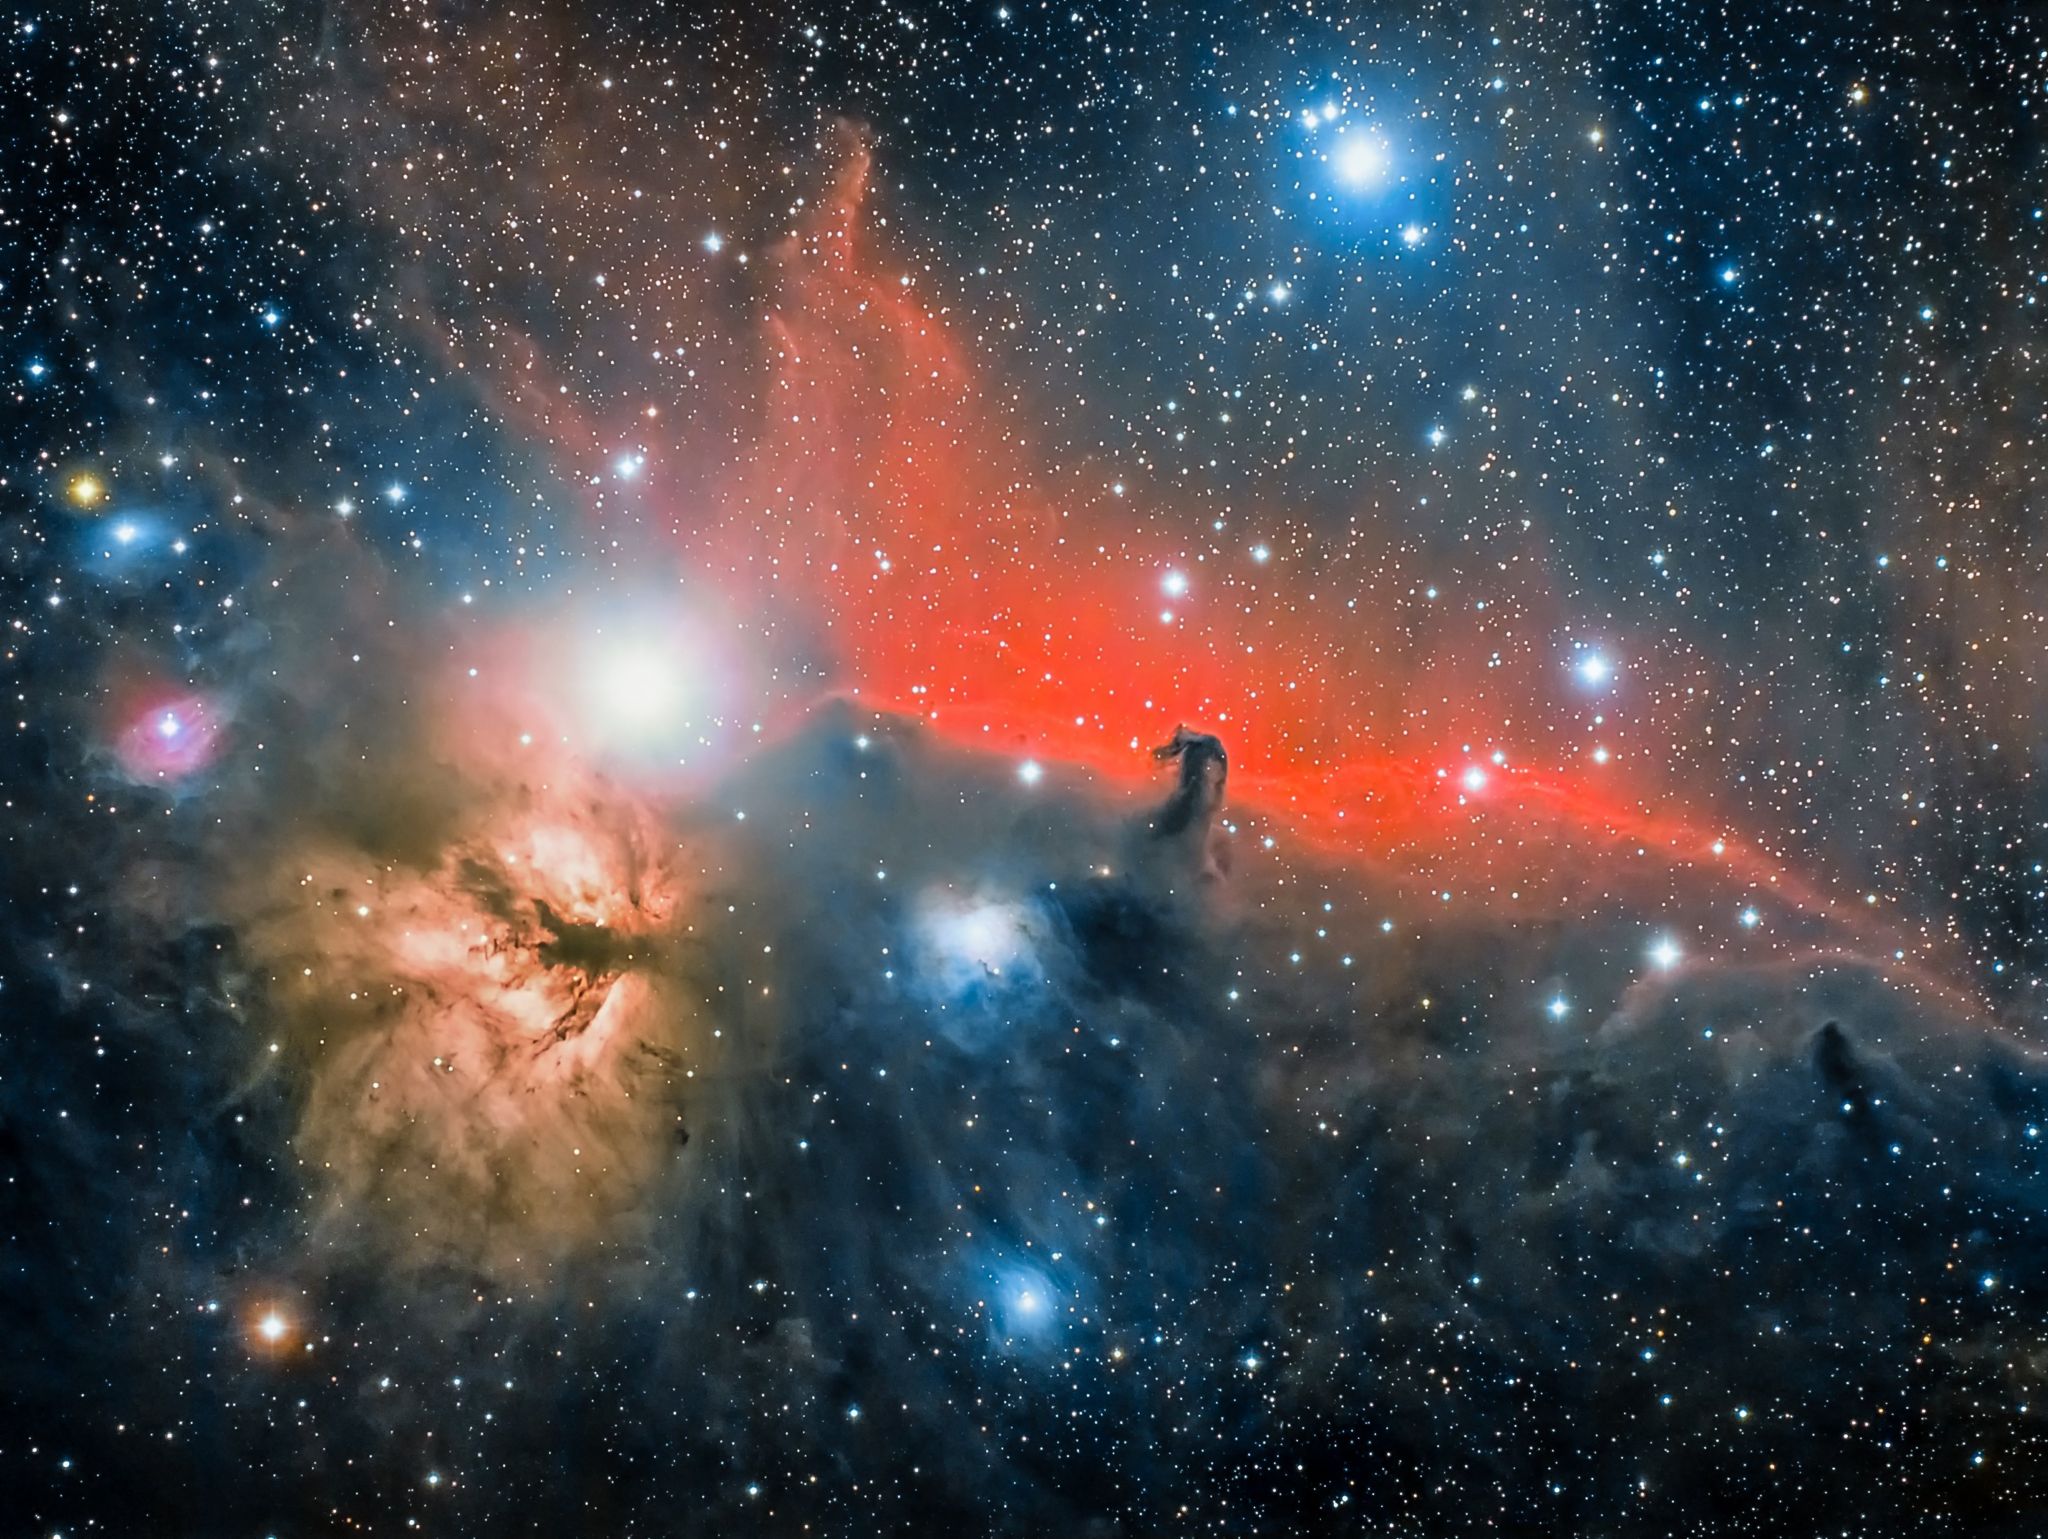 The Horsehead Nebula by Jose Jimenez Priego